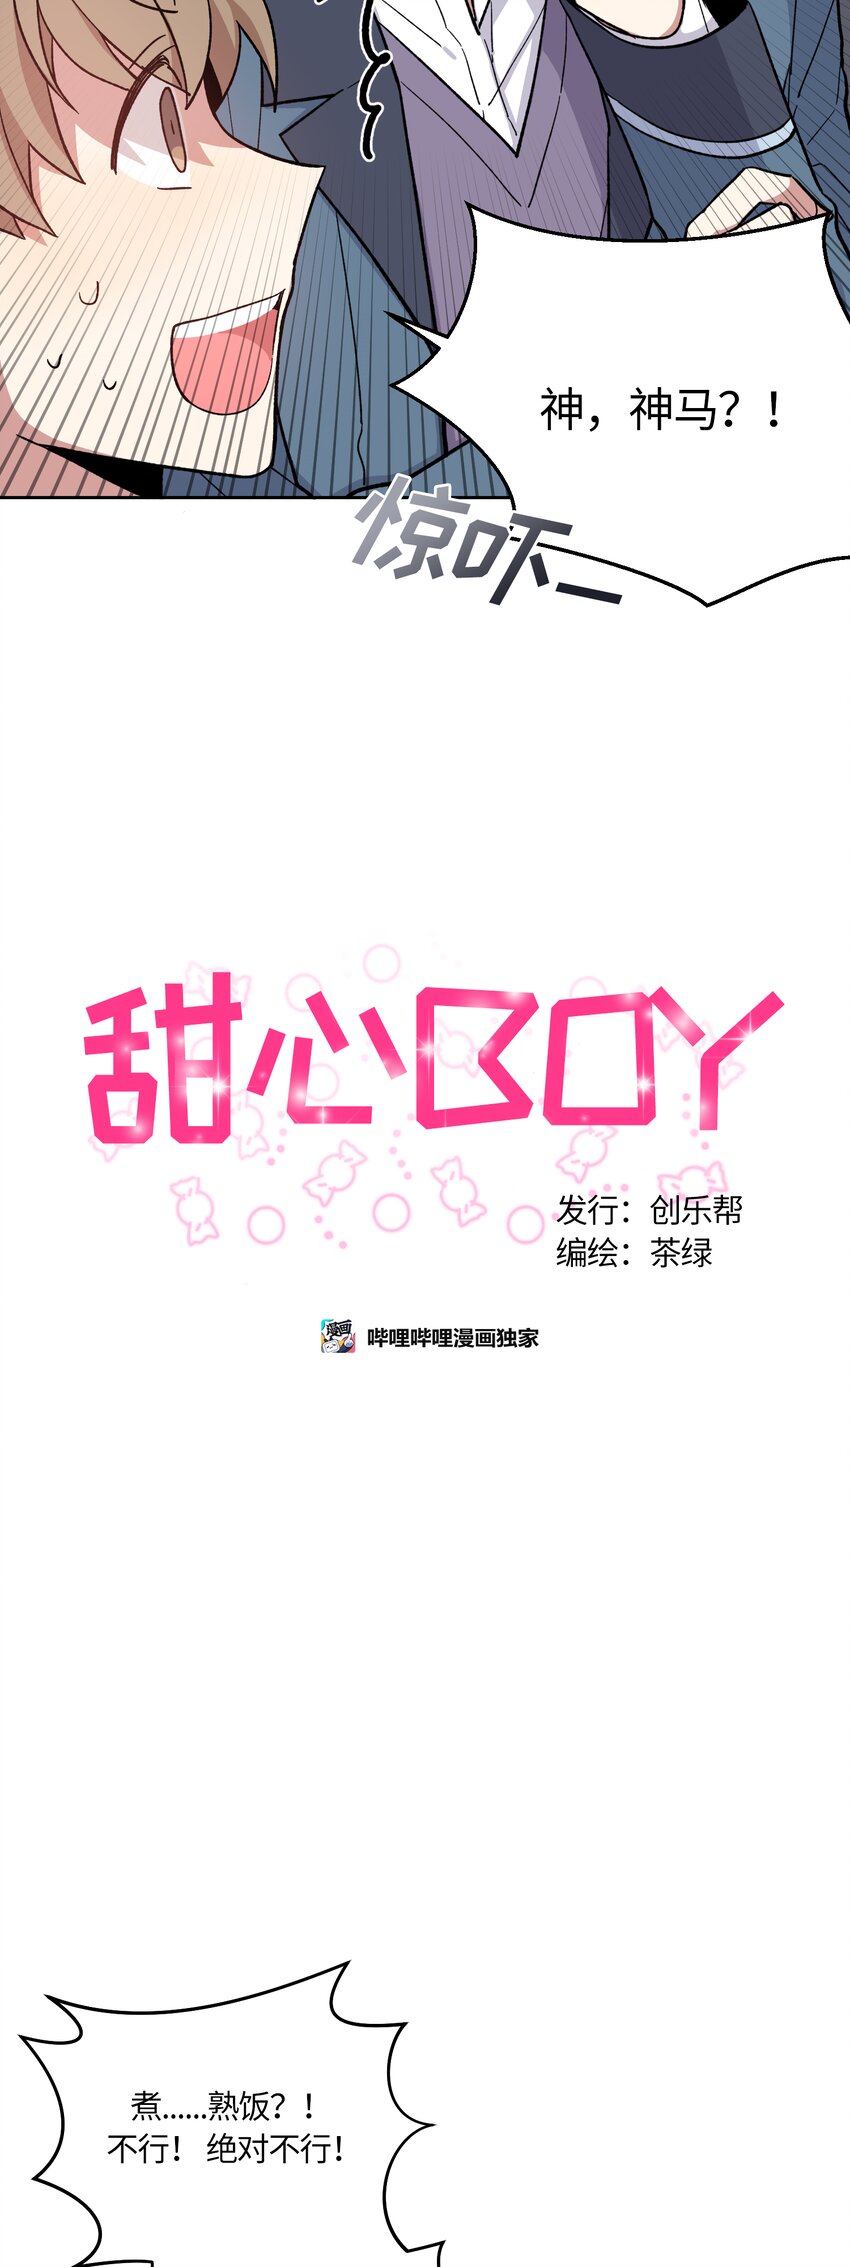 甜心BOY - 008 - 2